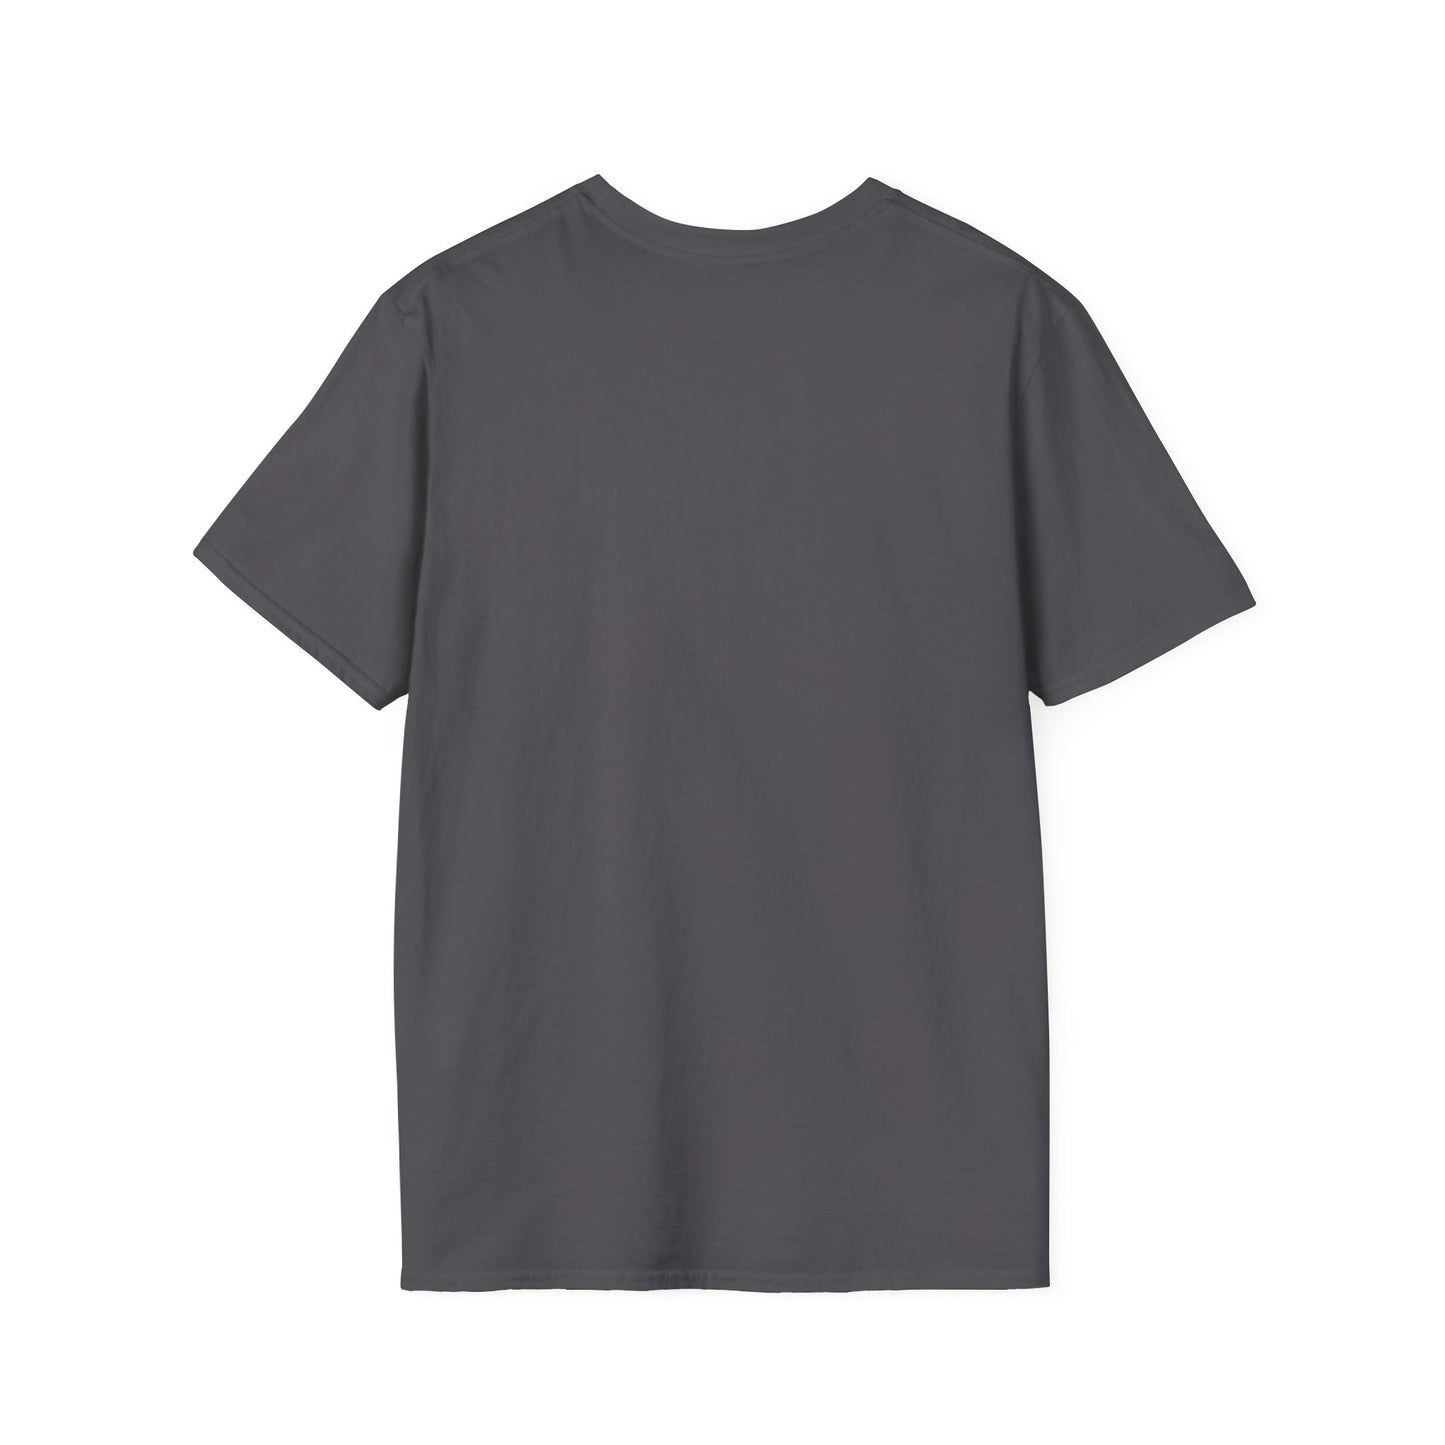 TG-16 Unisex Softstyle T-Shirt